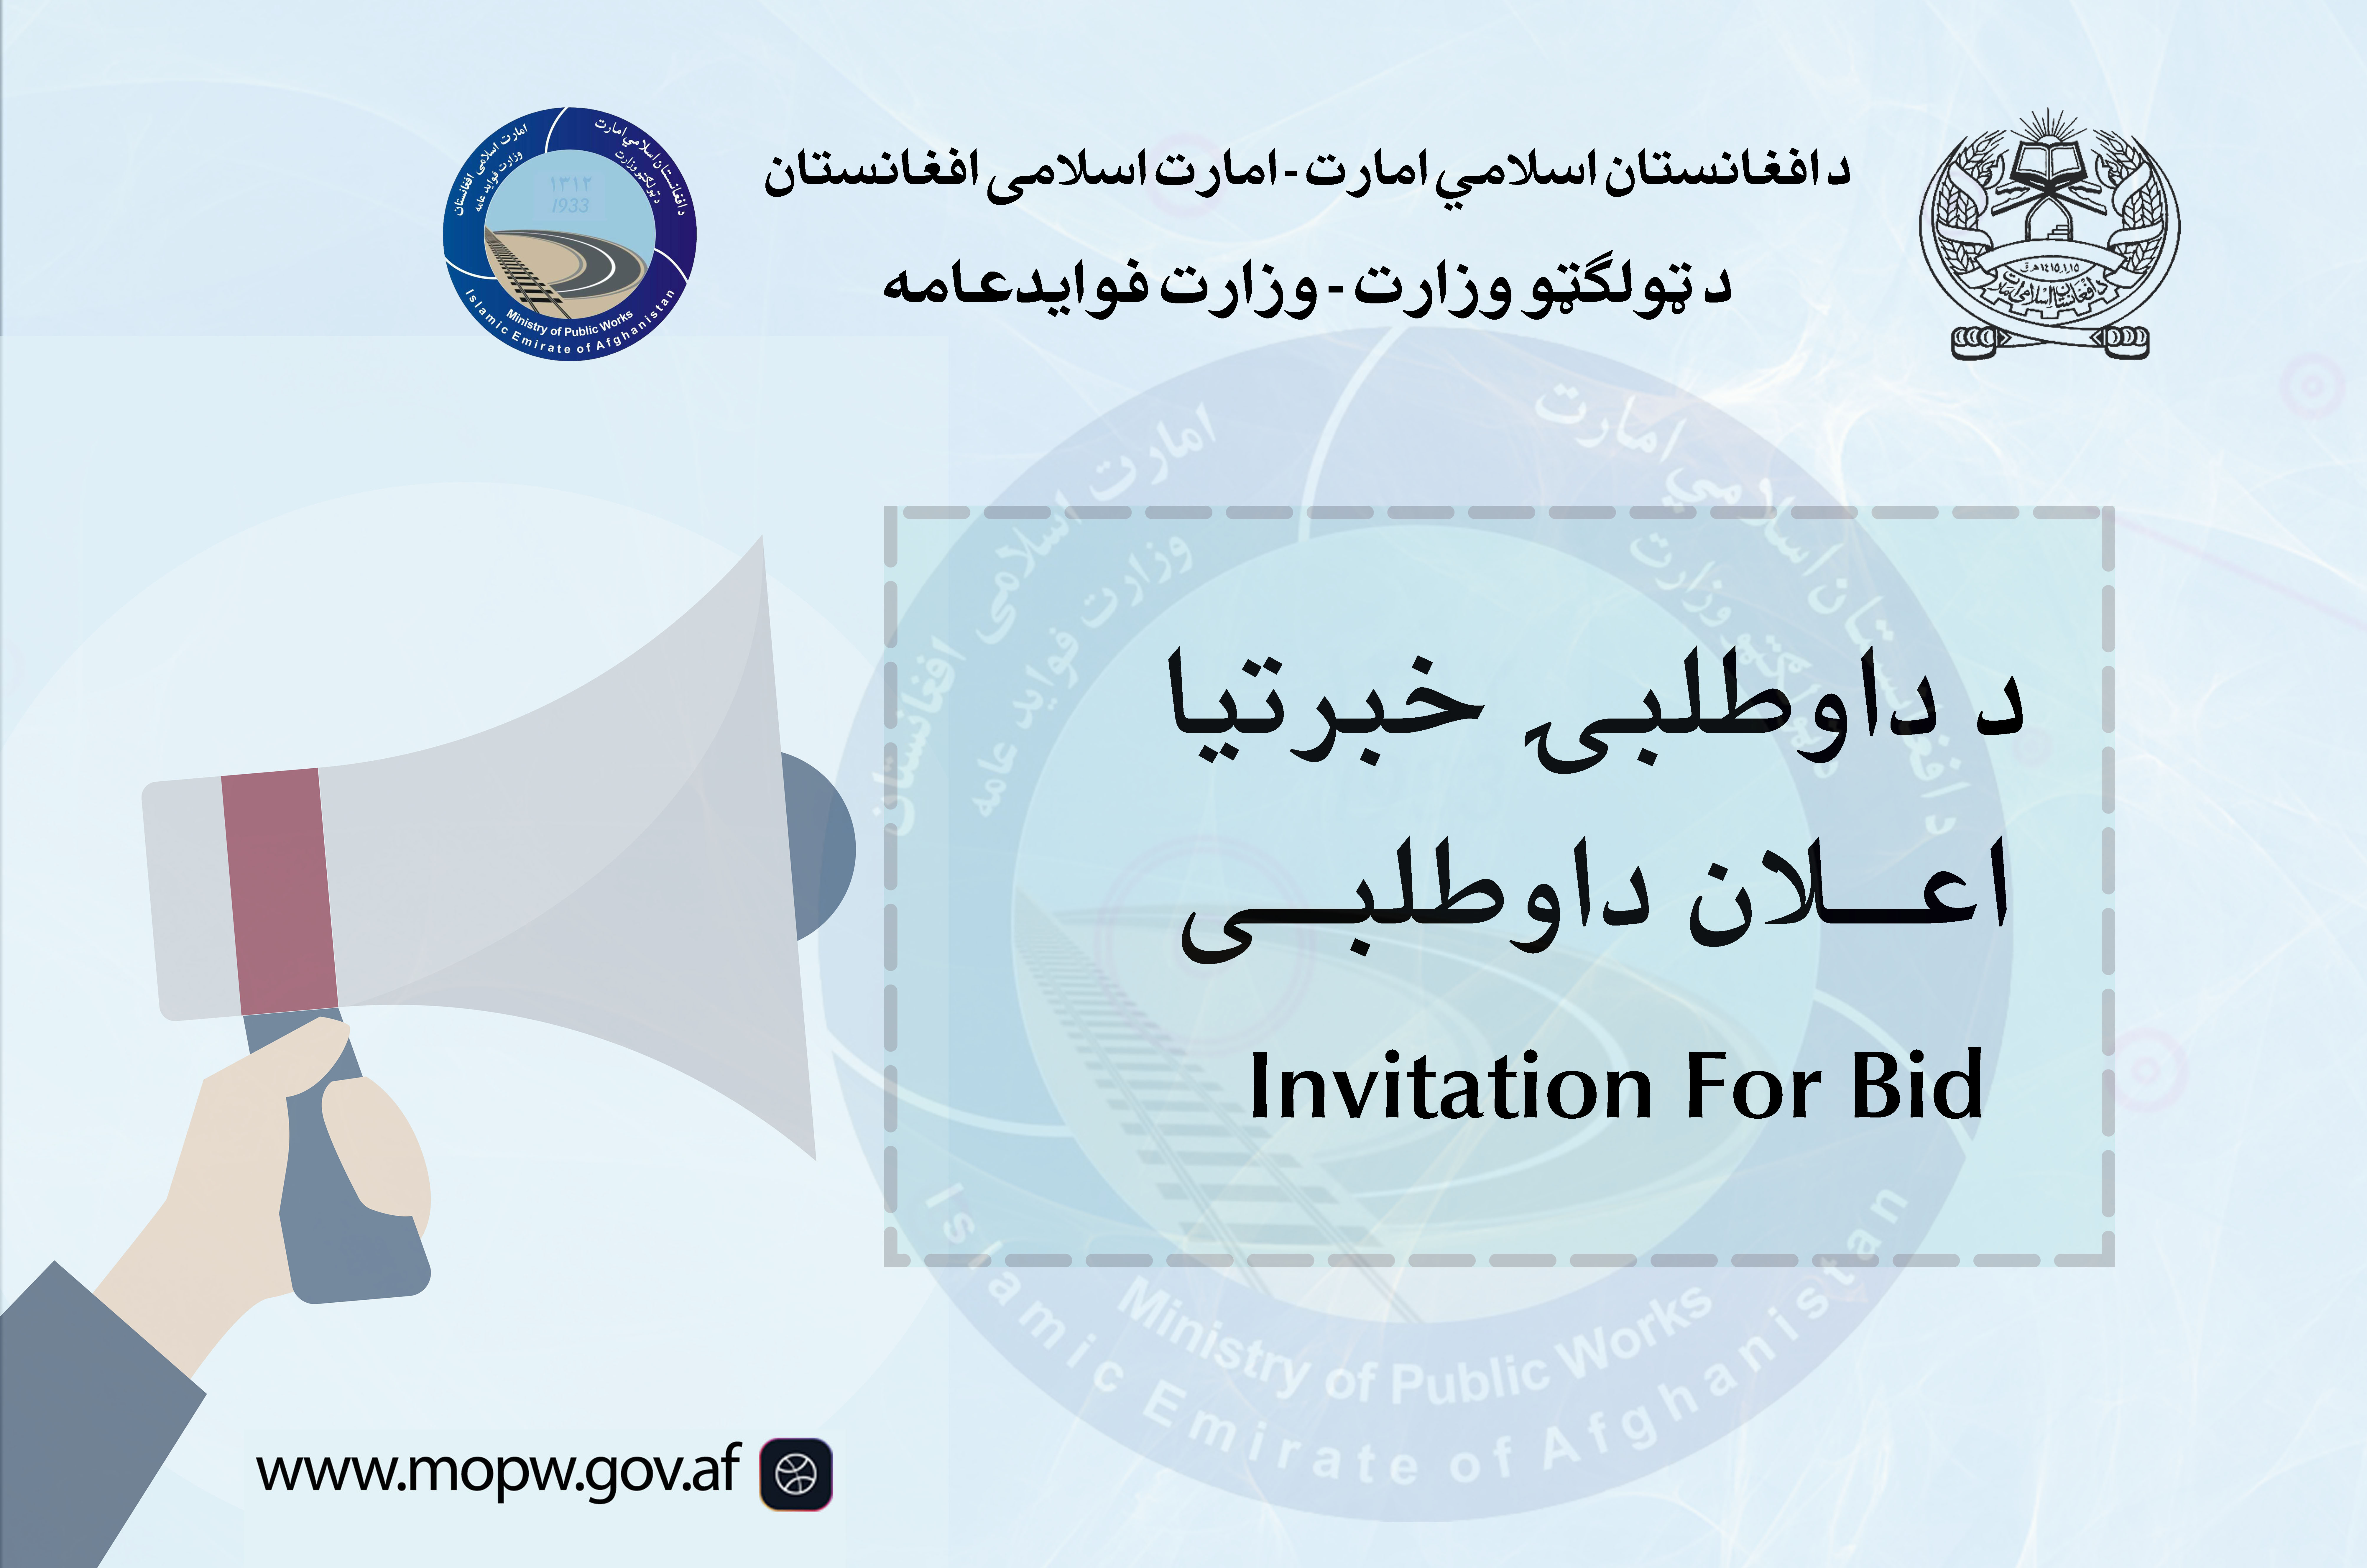 اعلان دعوت به داوطلبی  پروژه ساختمان مجدد وایه تخریب شده پل حسن کاریز واقع مسیر شاهراه عمومی کابل-کندهار